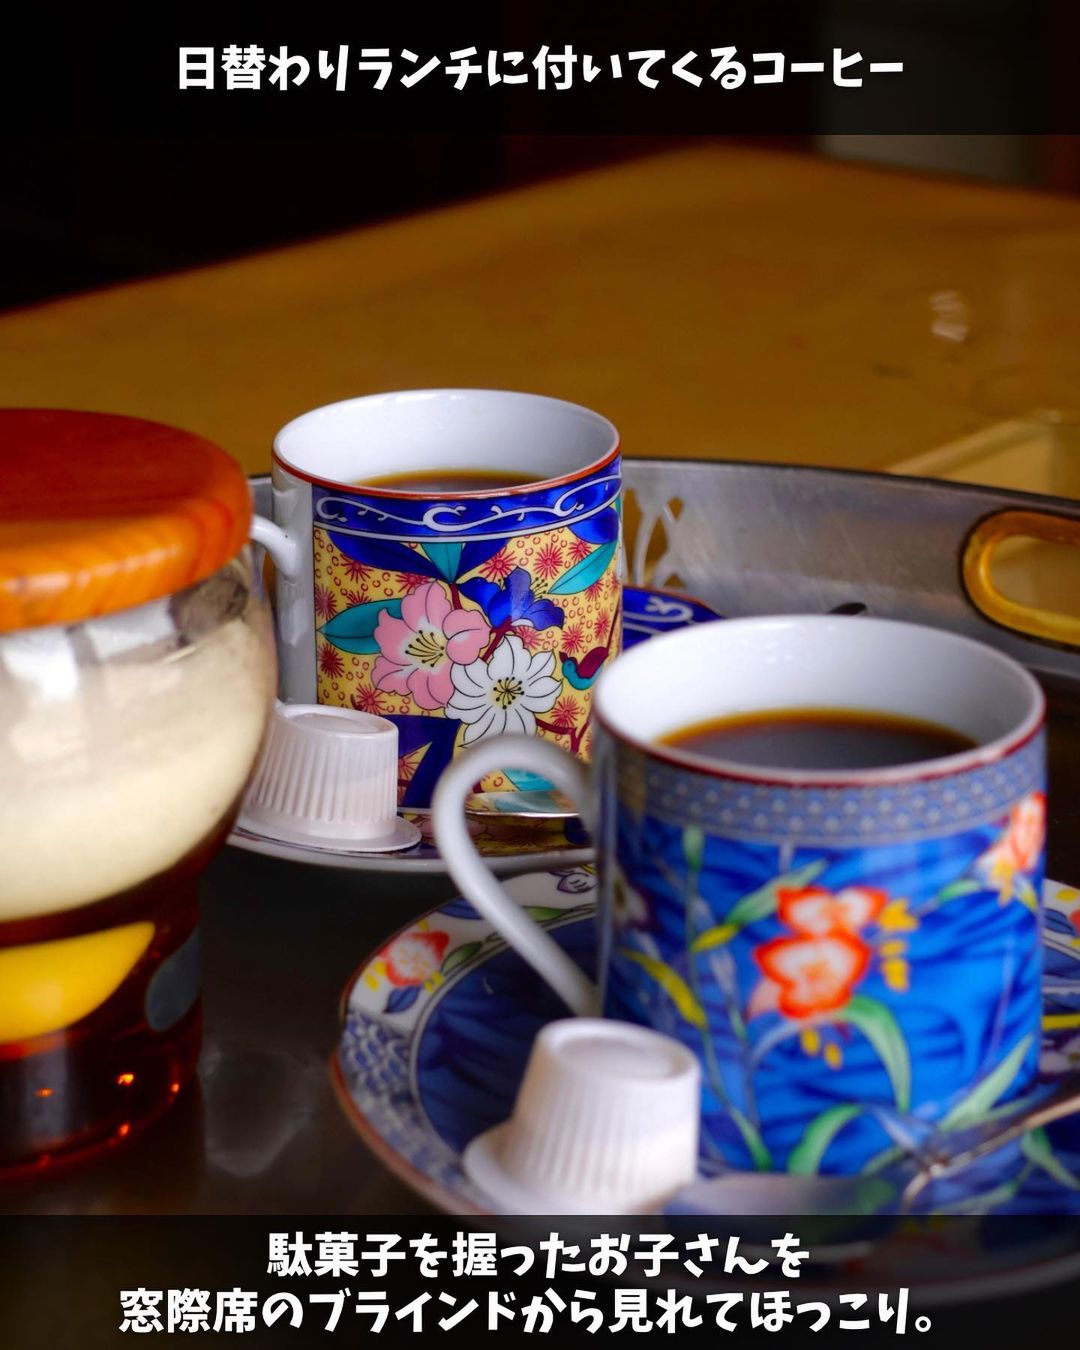 【大鰐町・軽食喫茶シーハイル】日替わりおまかせランチに付いてくるコーヒー